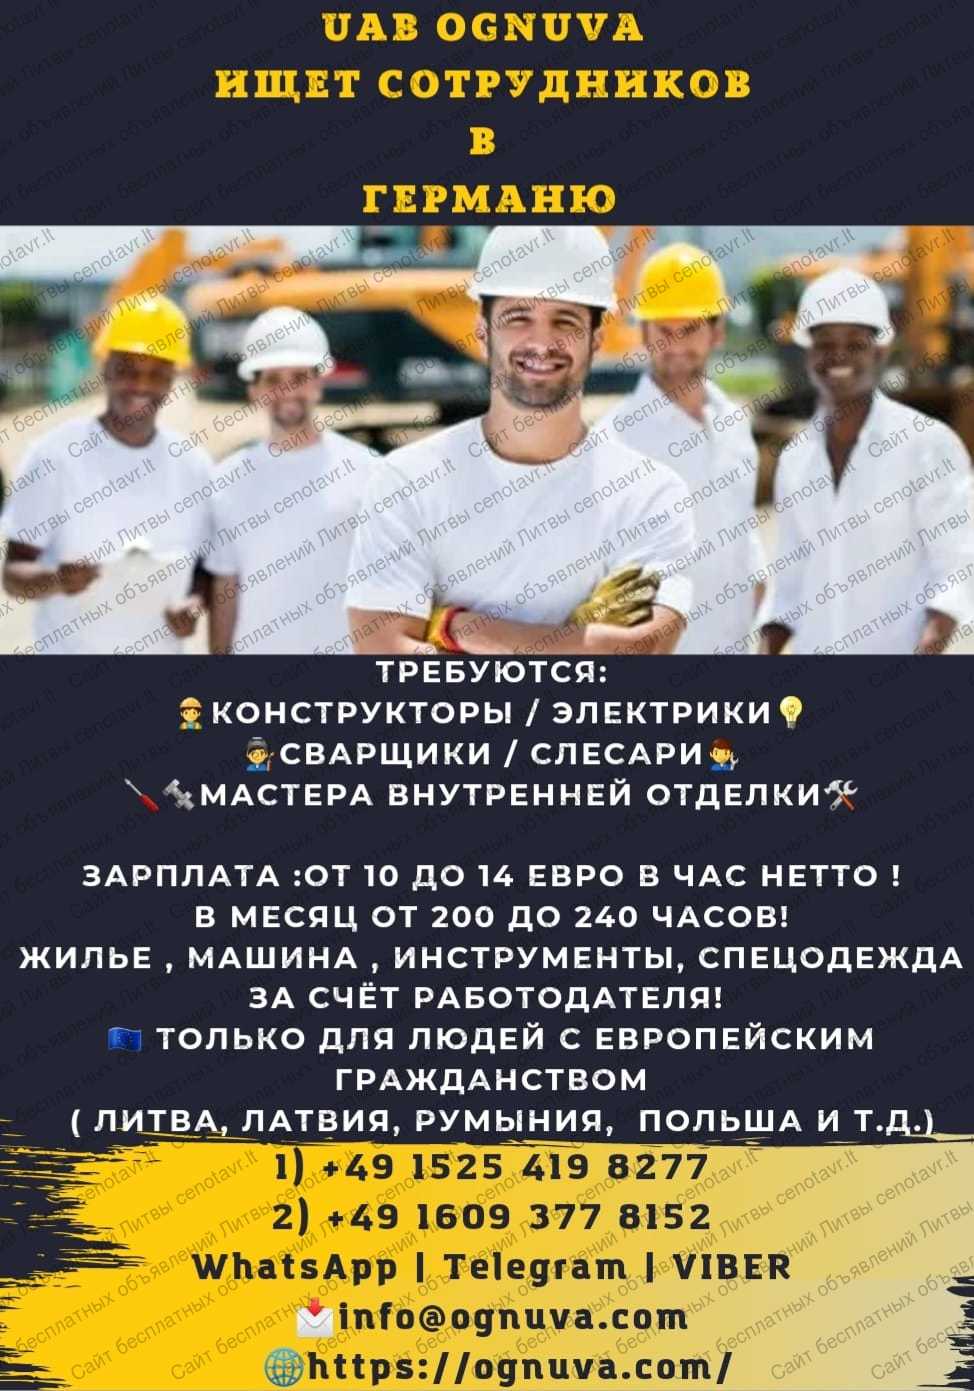 Работа в литве для украинцев. вакансии в литве без посредников